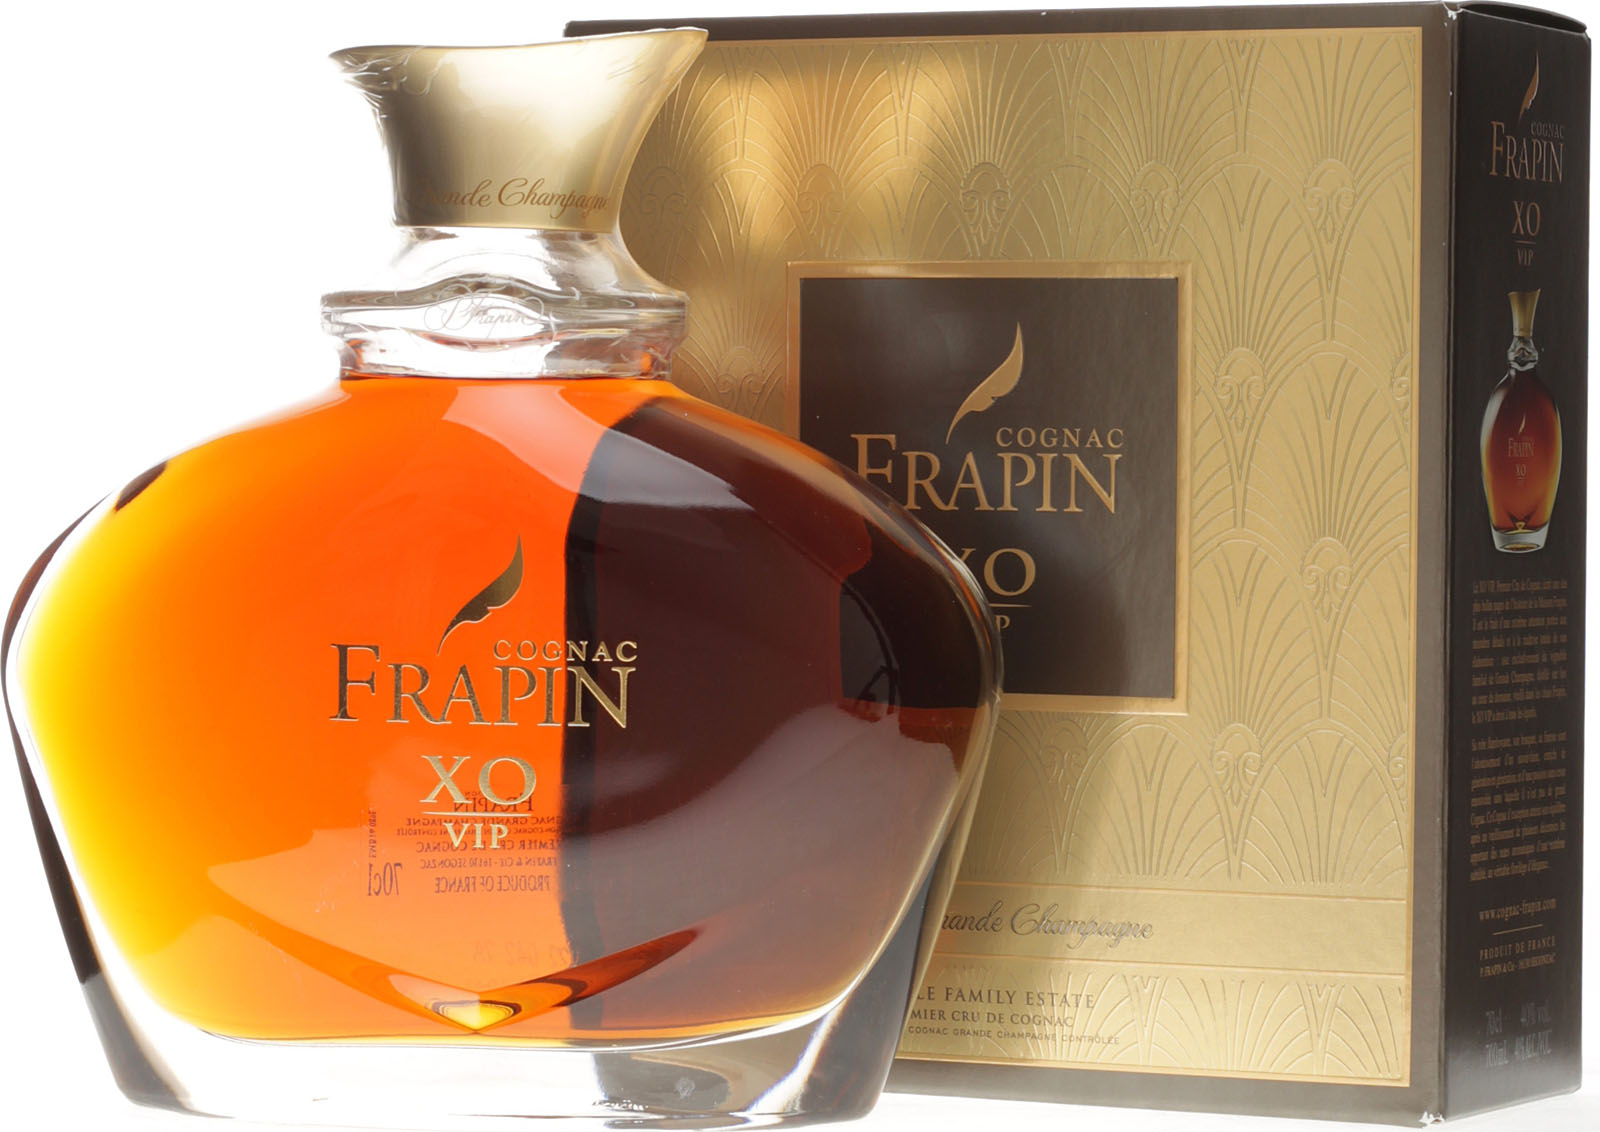 Frapin XO Cognac hier bei uns im Onlineshop